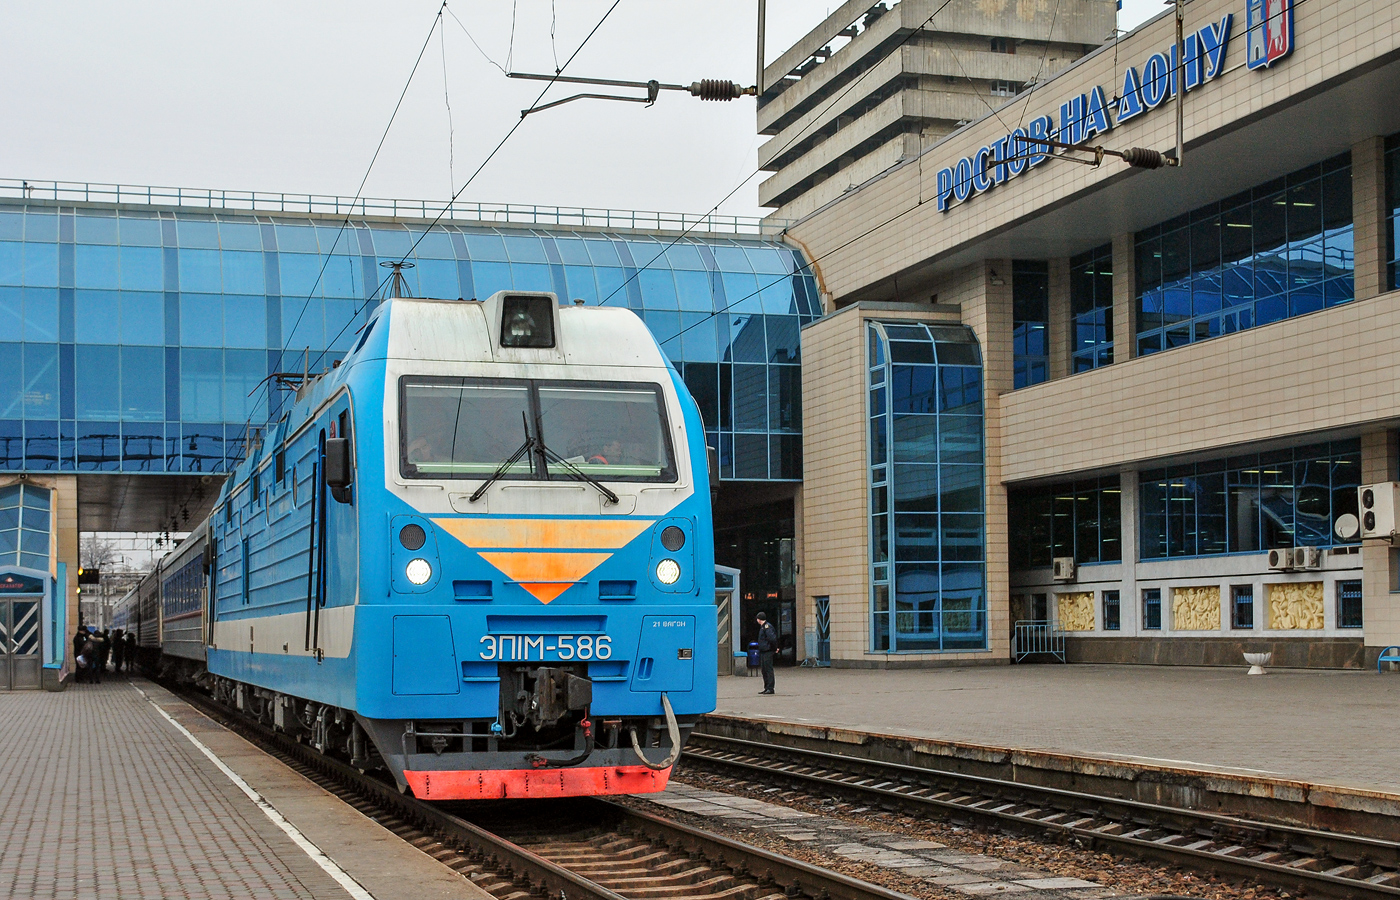 ростовский железнодорожный вокзал